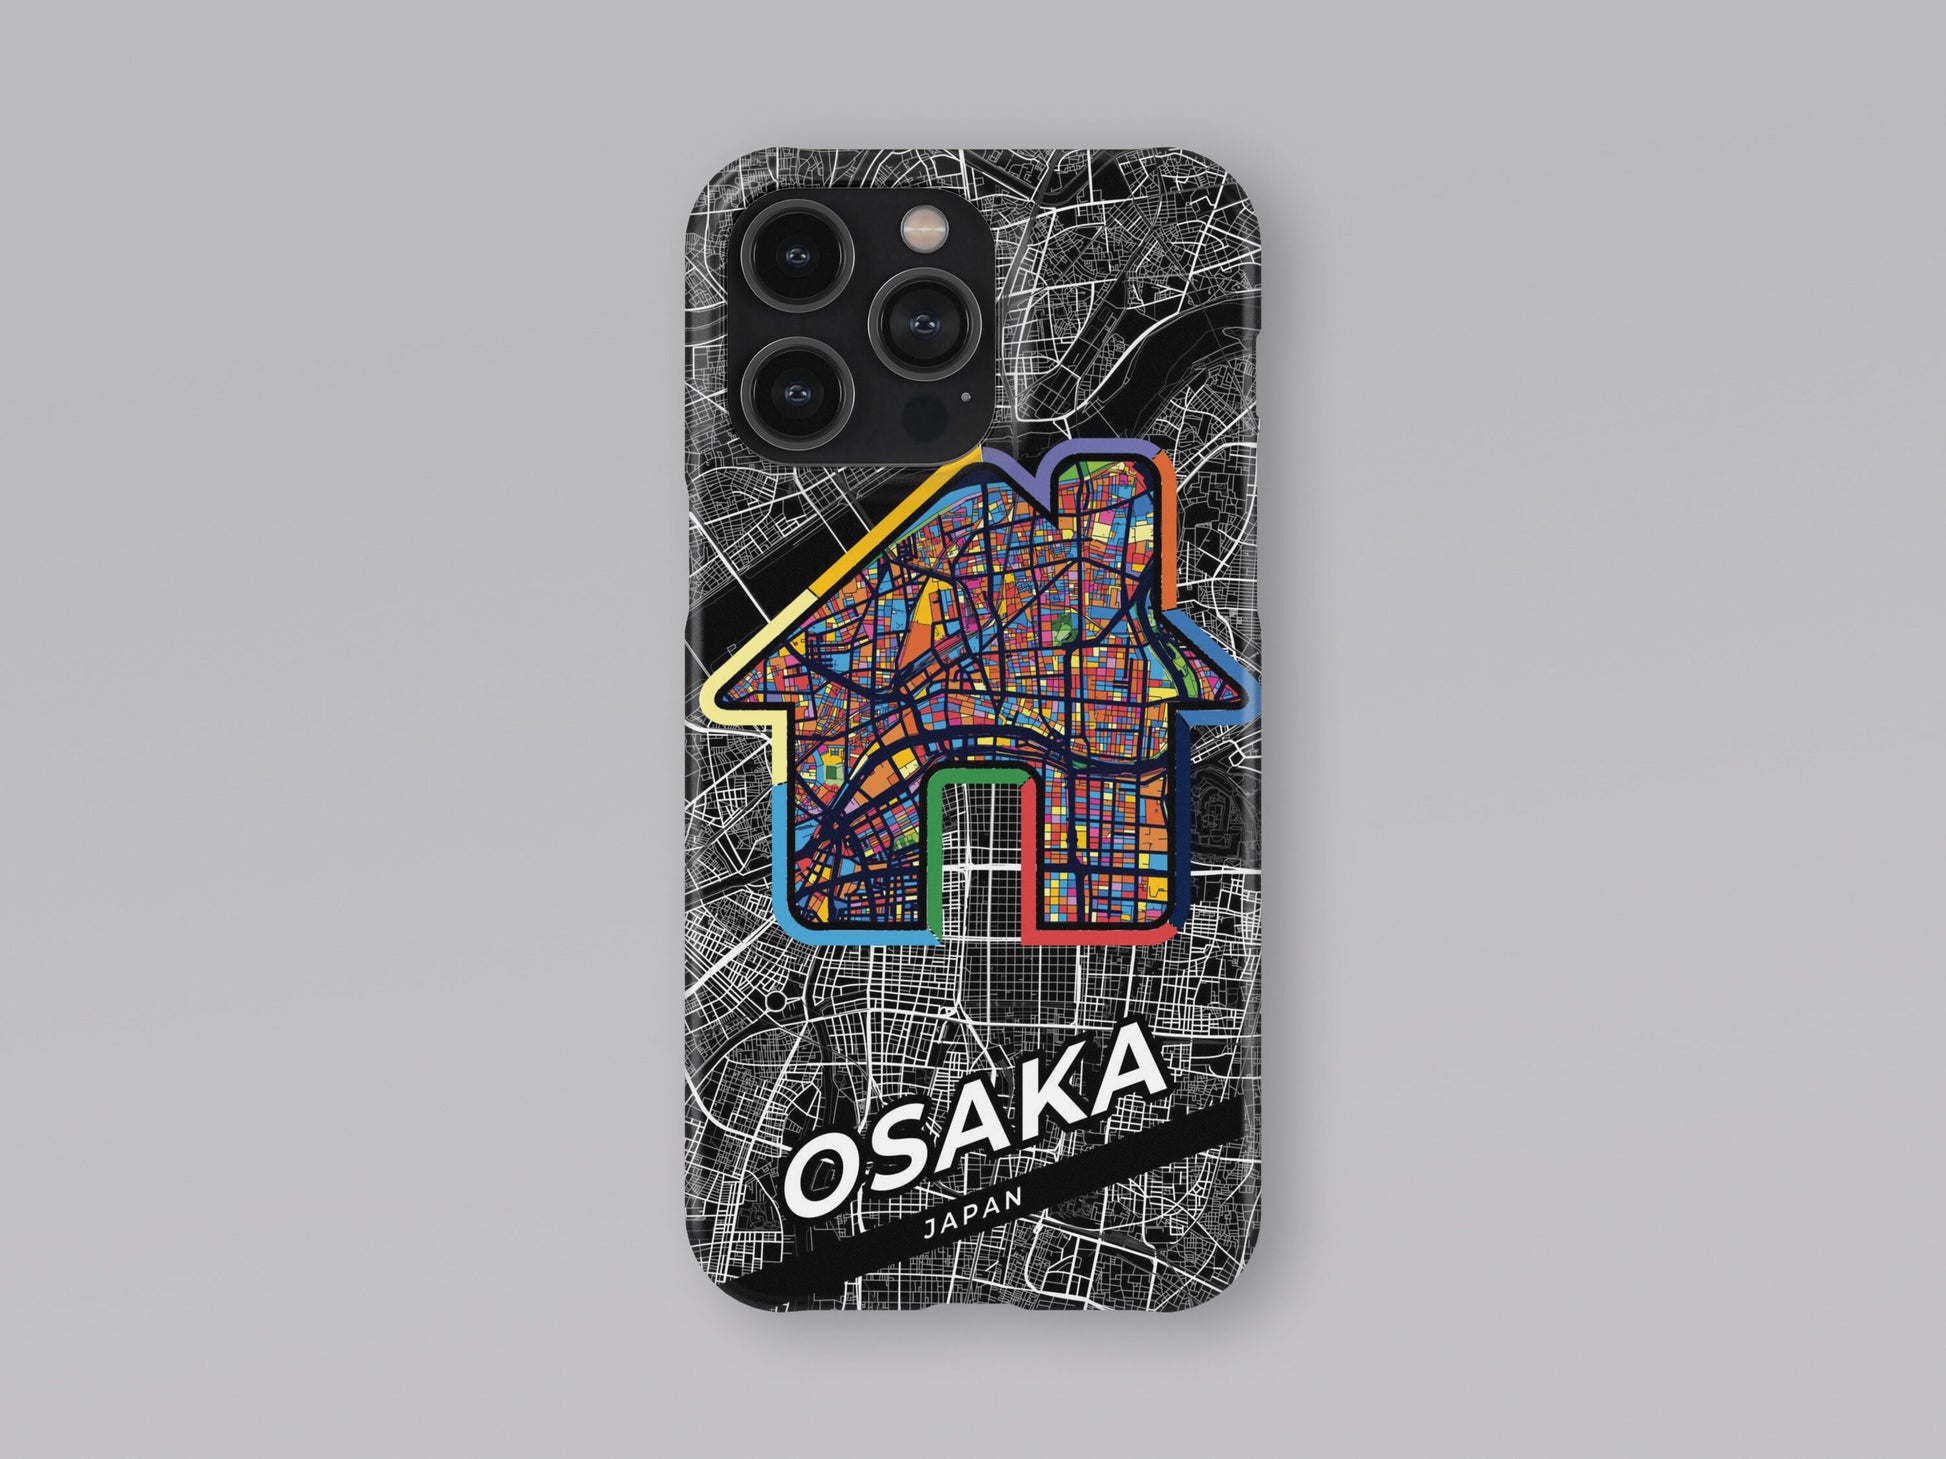 Osaka Japan slim phone case with colorful icon 3